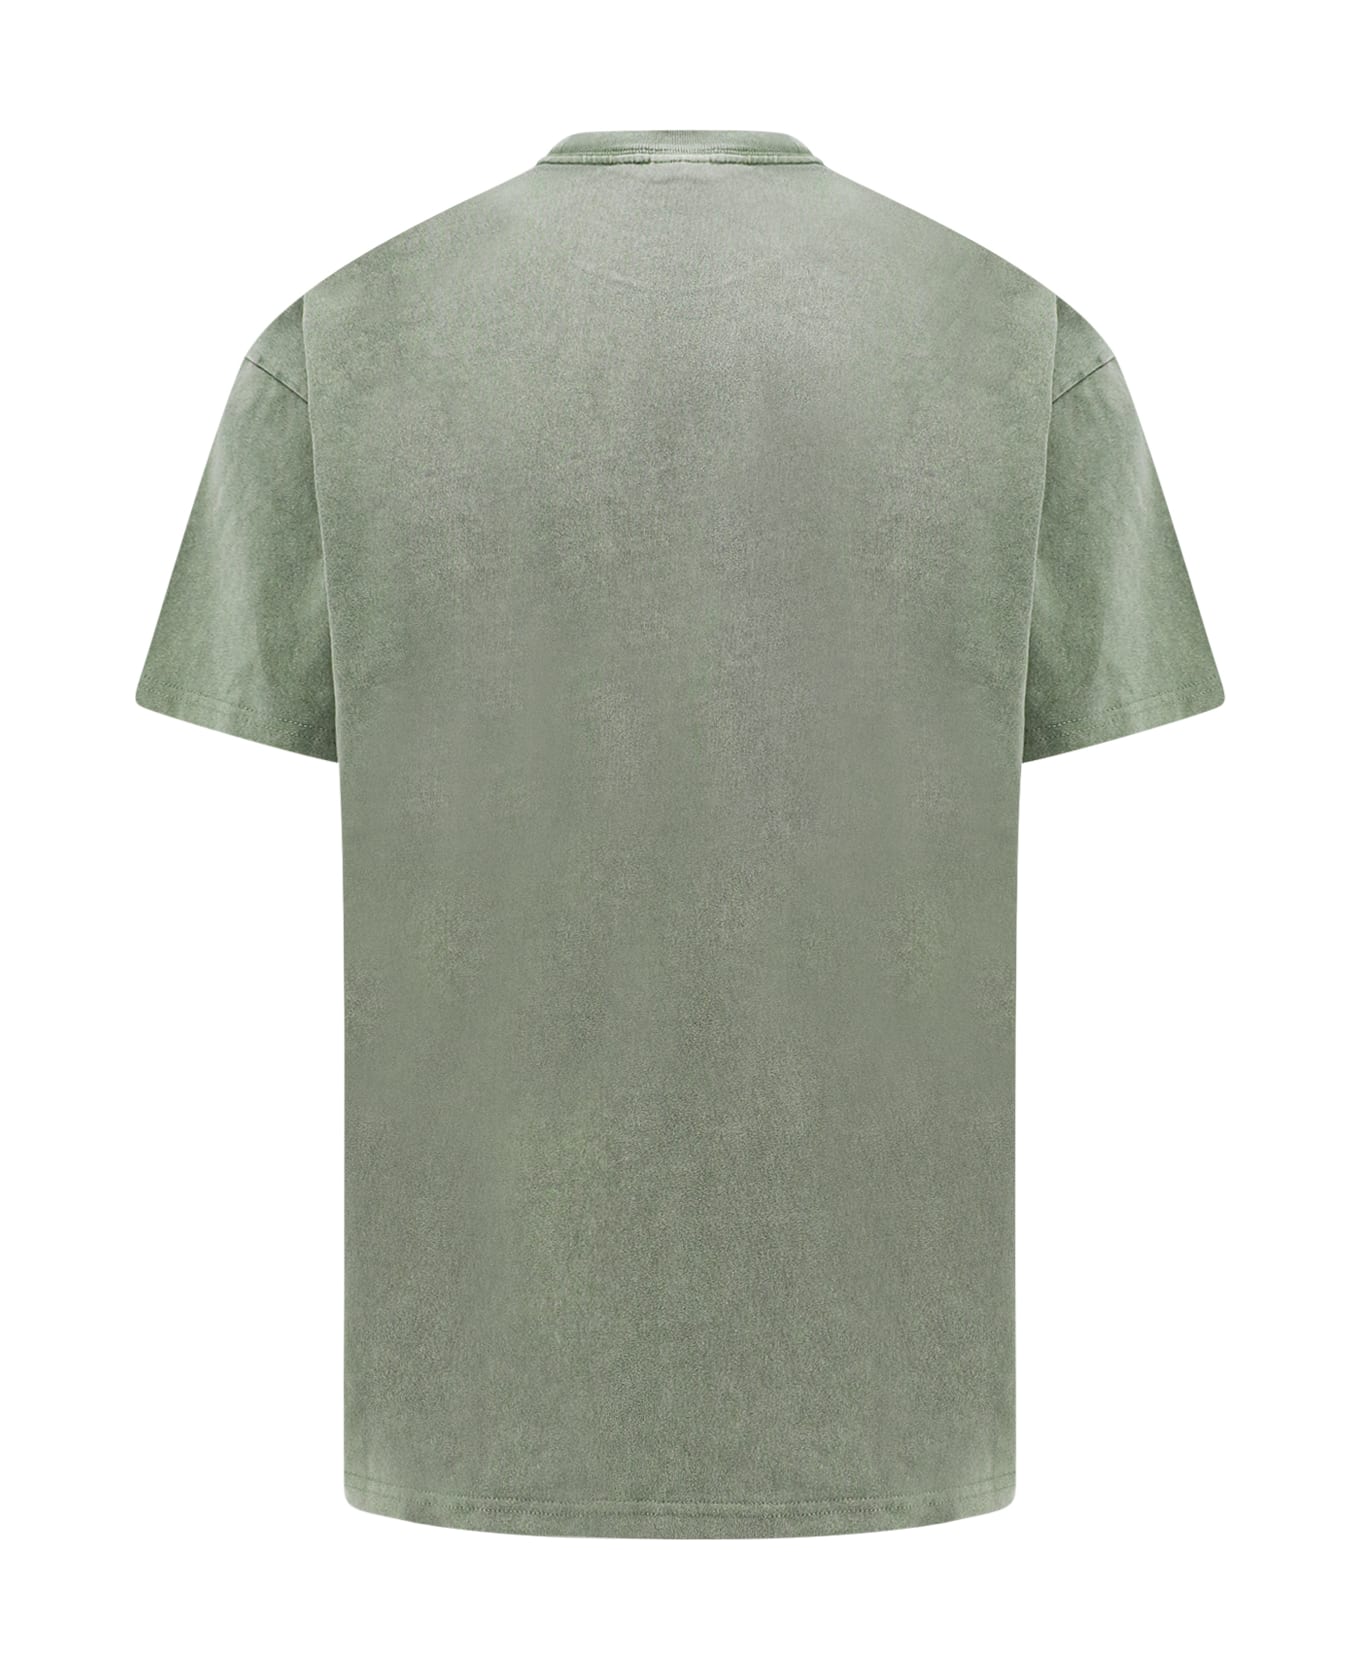 Carhartt Duster T-shirt - Green